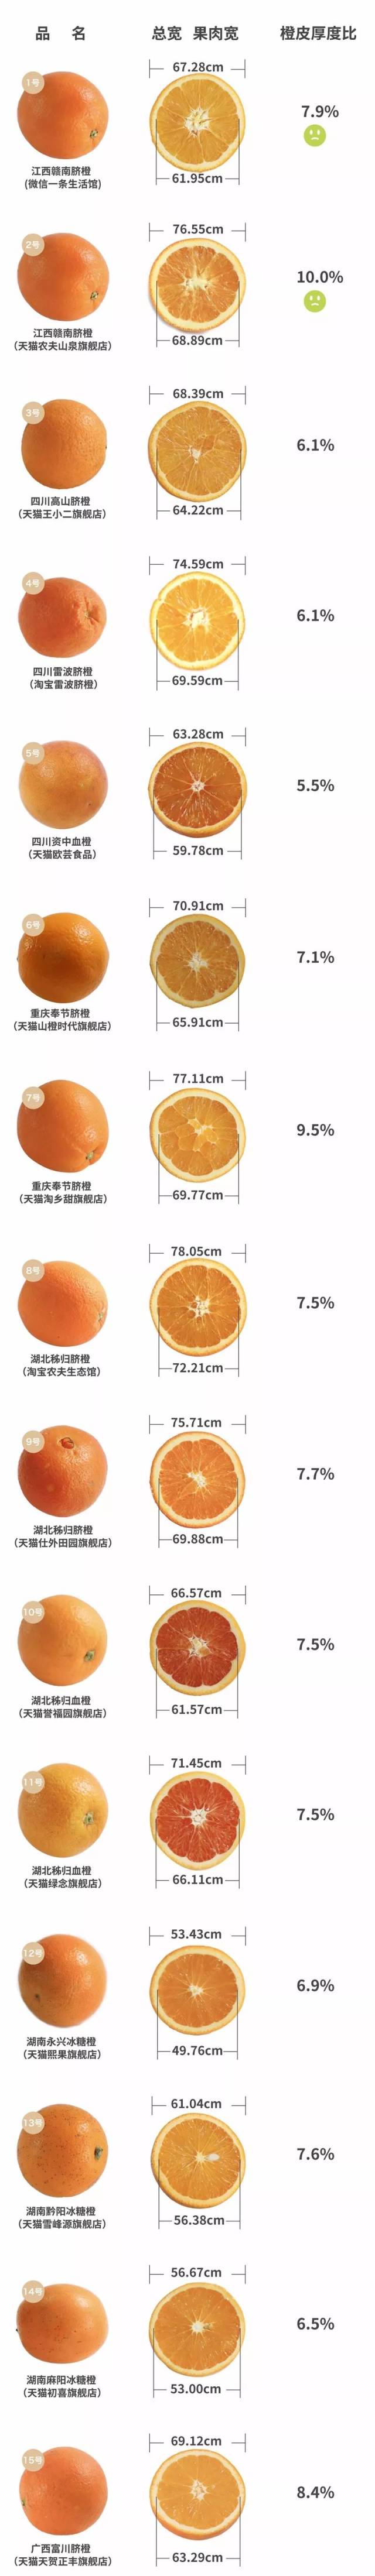 橘子的结构名称图片